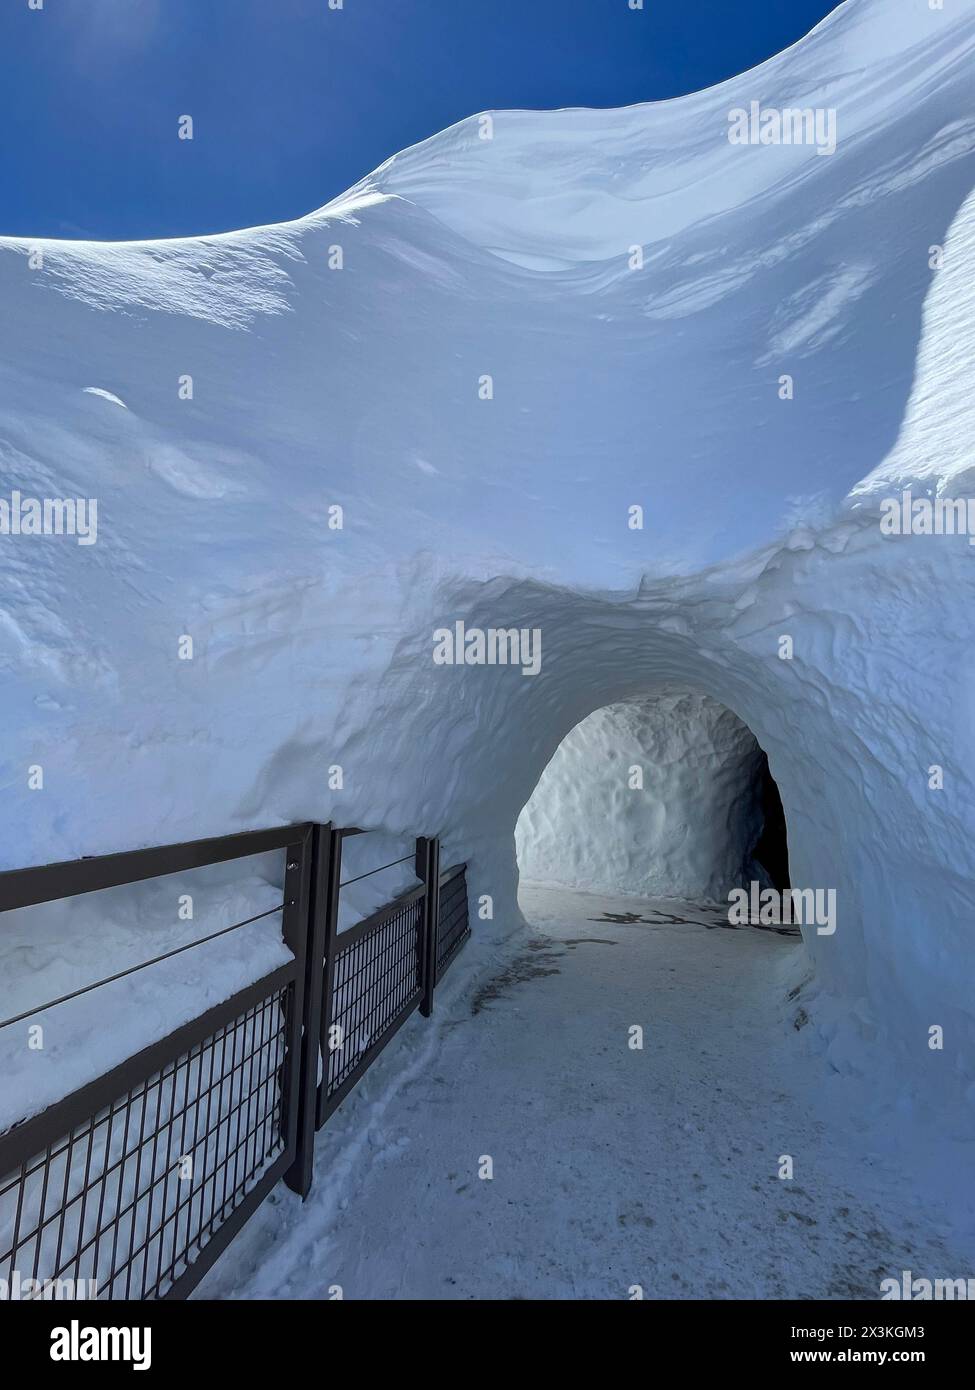 Haute-Savoie, France : tunnel de glace au sommet de L’aiguille du midi, la plus haute flèche (3,842 m) des aiguilles de Chamonix dans le massif du Mont Blanc Banque D'Images